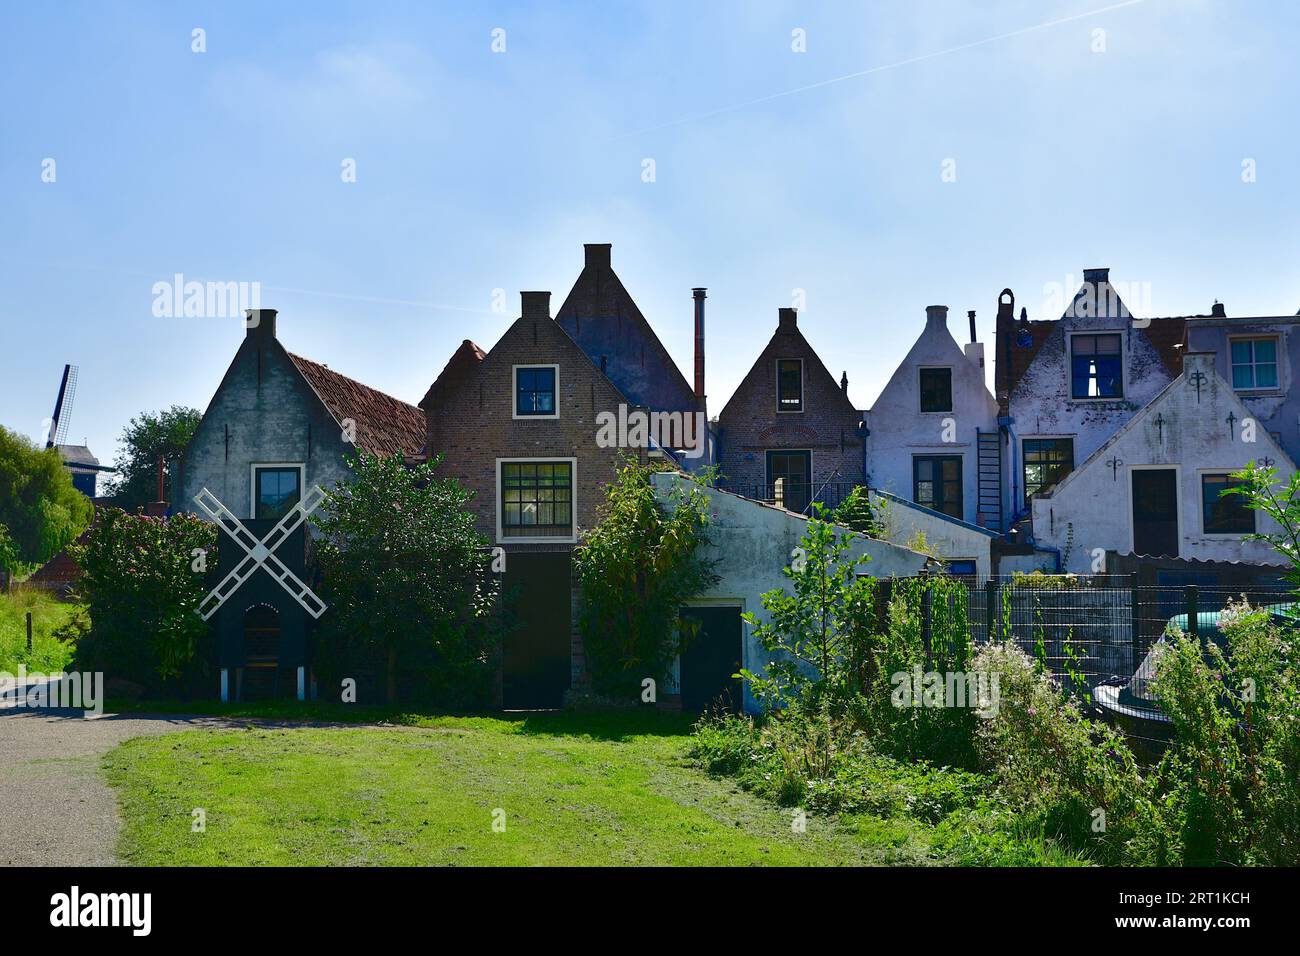 Vue sur les façades arrière des maisons situées sur les remparts de la ville fortifiée de Brielle ; le moulin 't Vliegend Hert est juste visible Banque D'Images